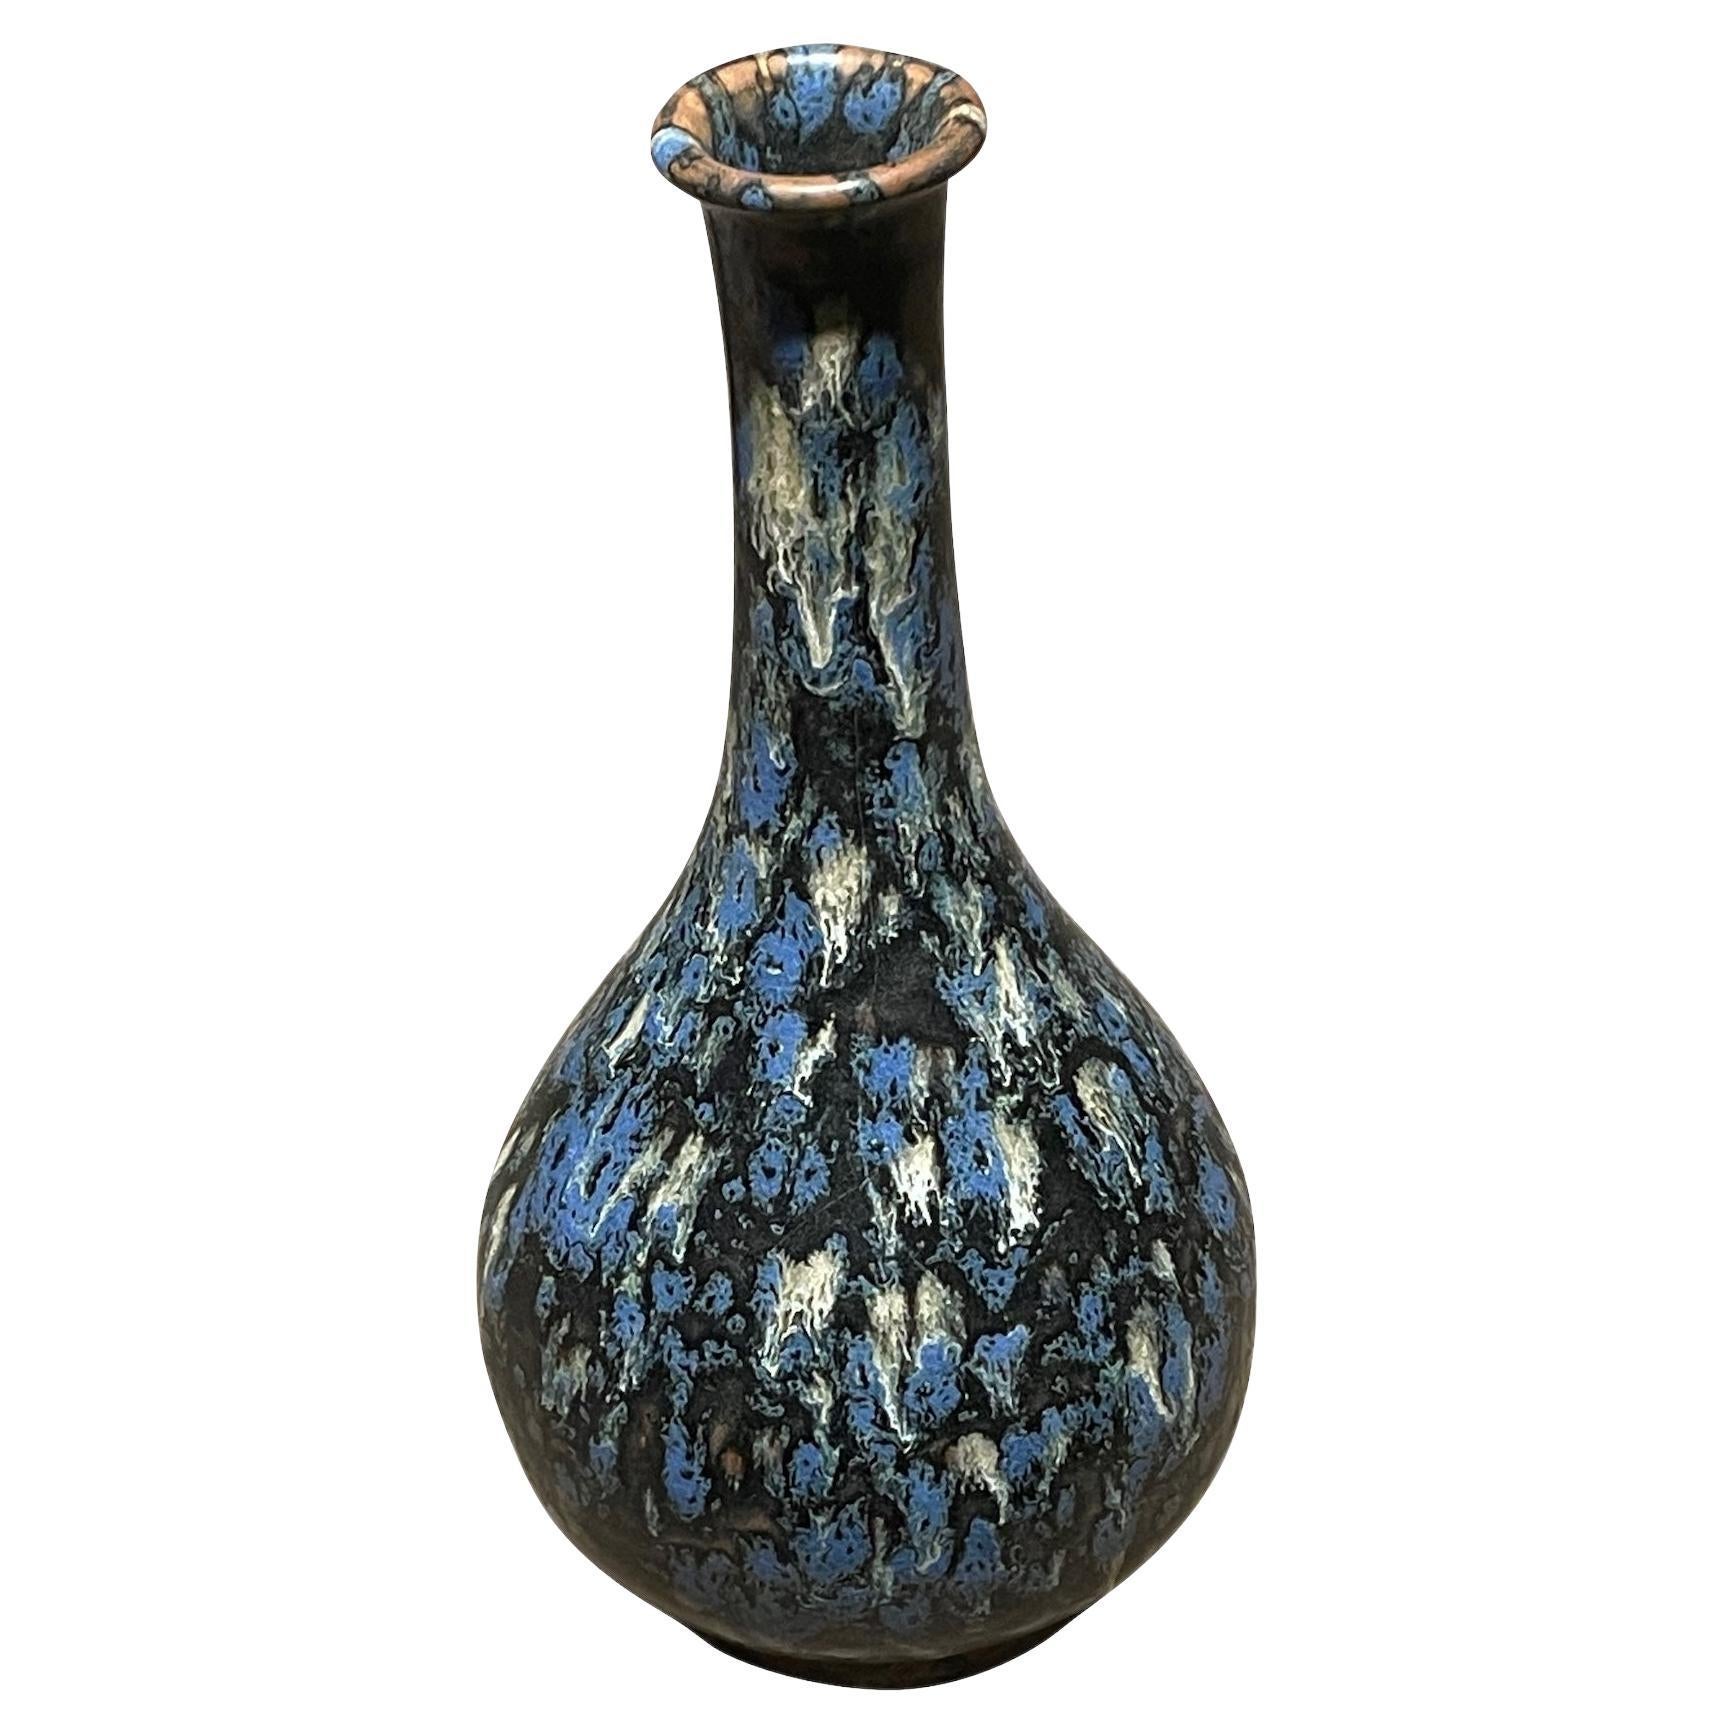 Zeitgenössische chinesische Vase mit dünnem Hals und schwarzer, blauer und weißer Sprenkelglasur.
Eine von mehreren aus einer Sammlung mit ähnlicher Glasur in verschiedenen Formen.
